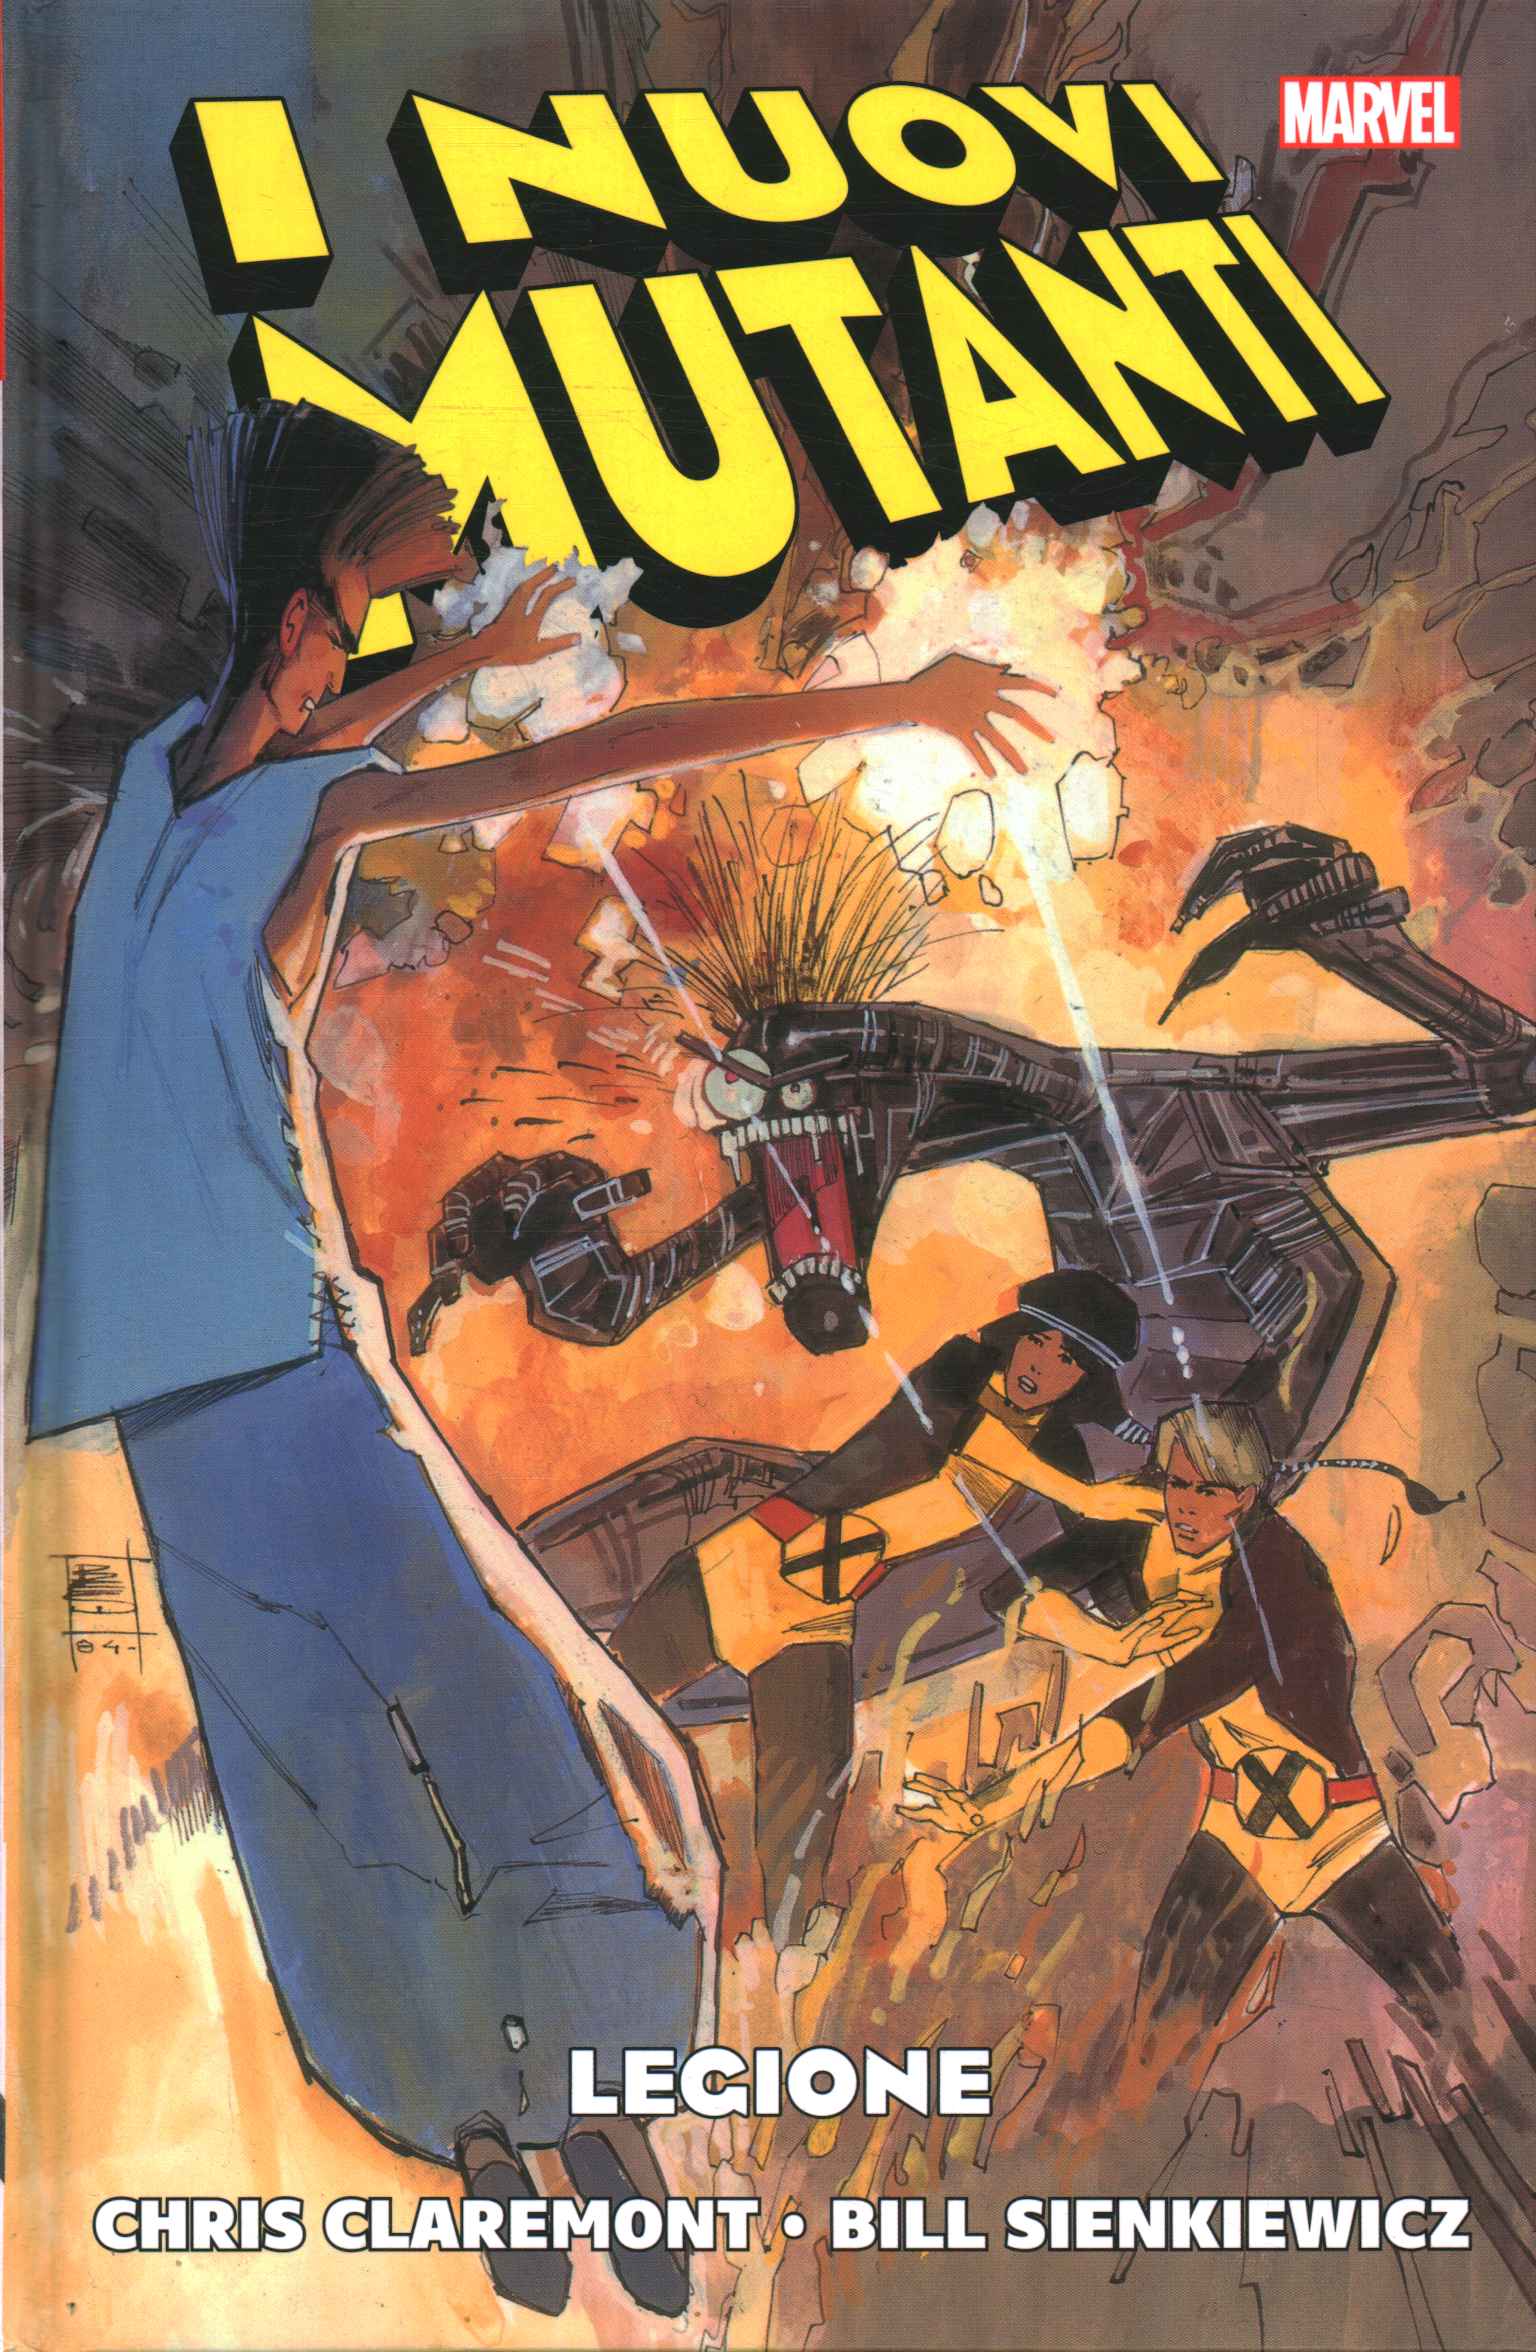 I nuovi mutanti: Legione - Chris Claremont, Bill Sienkiewicz (Panini Comics)